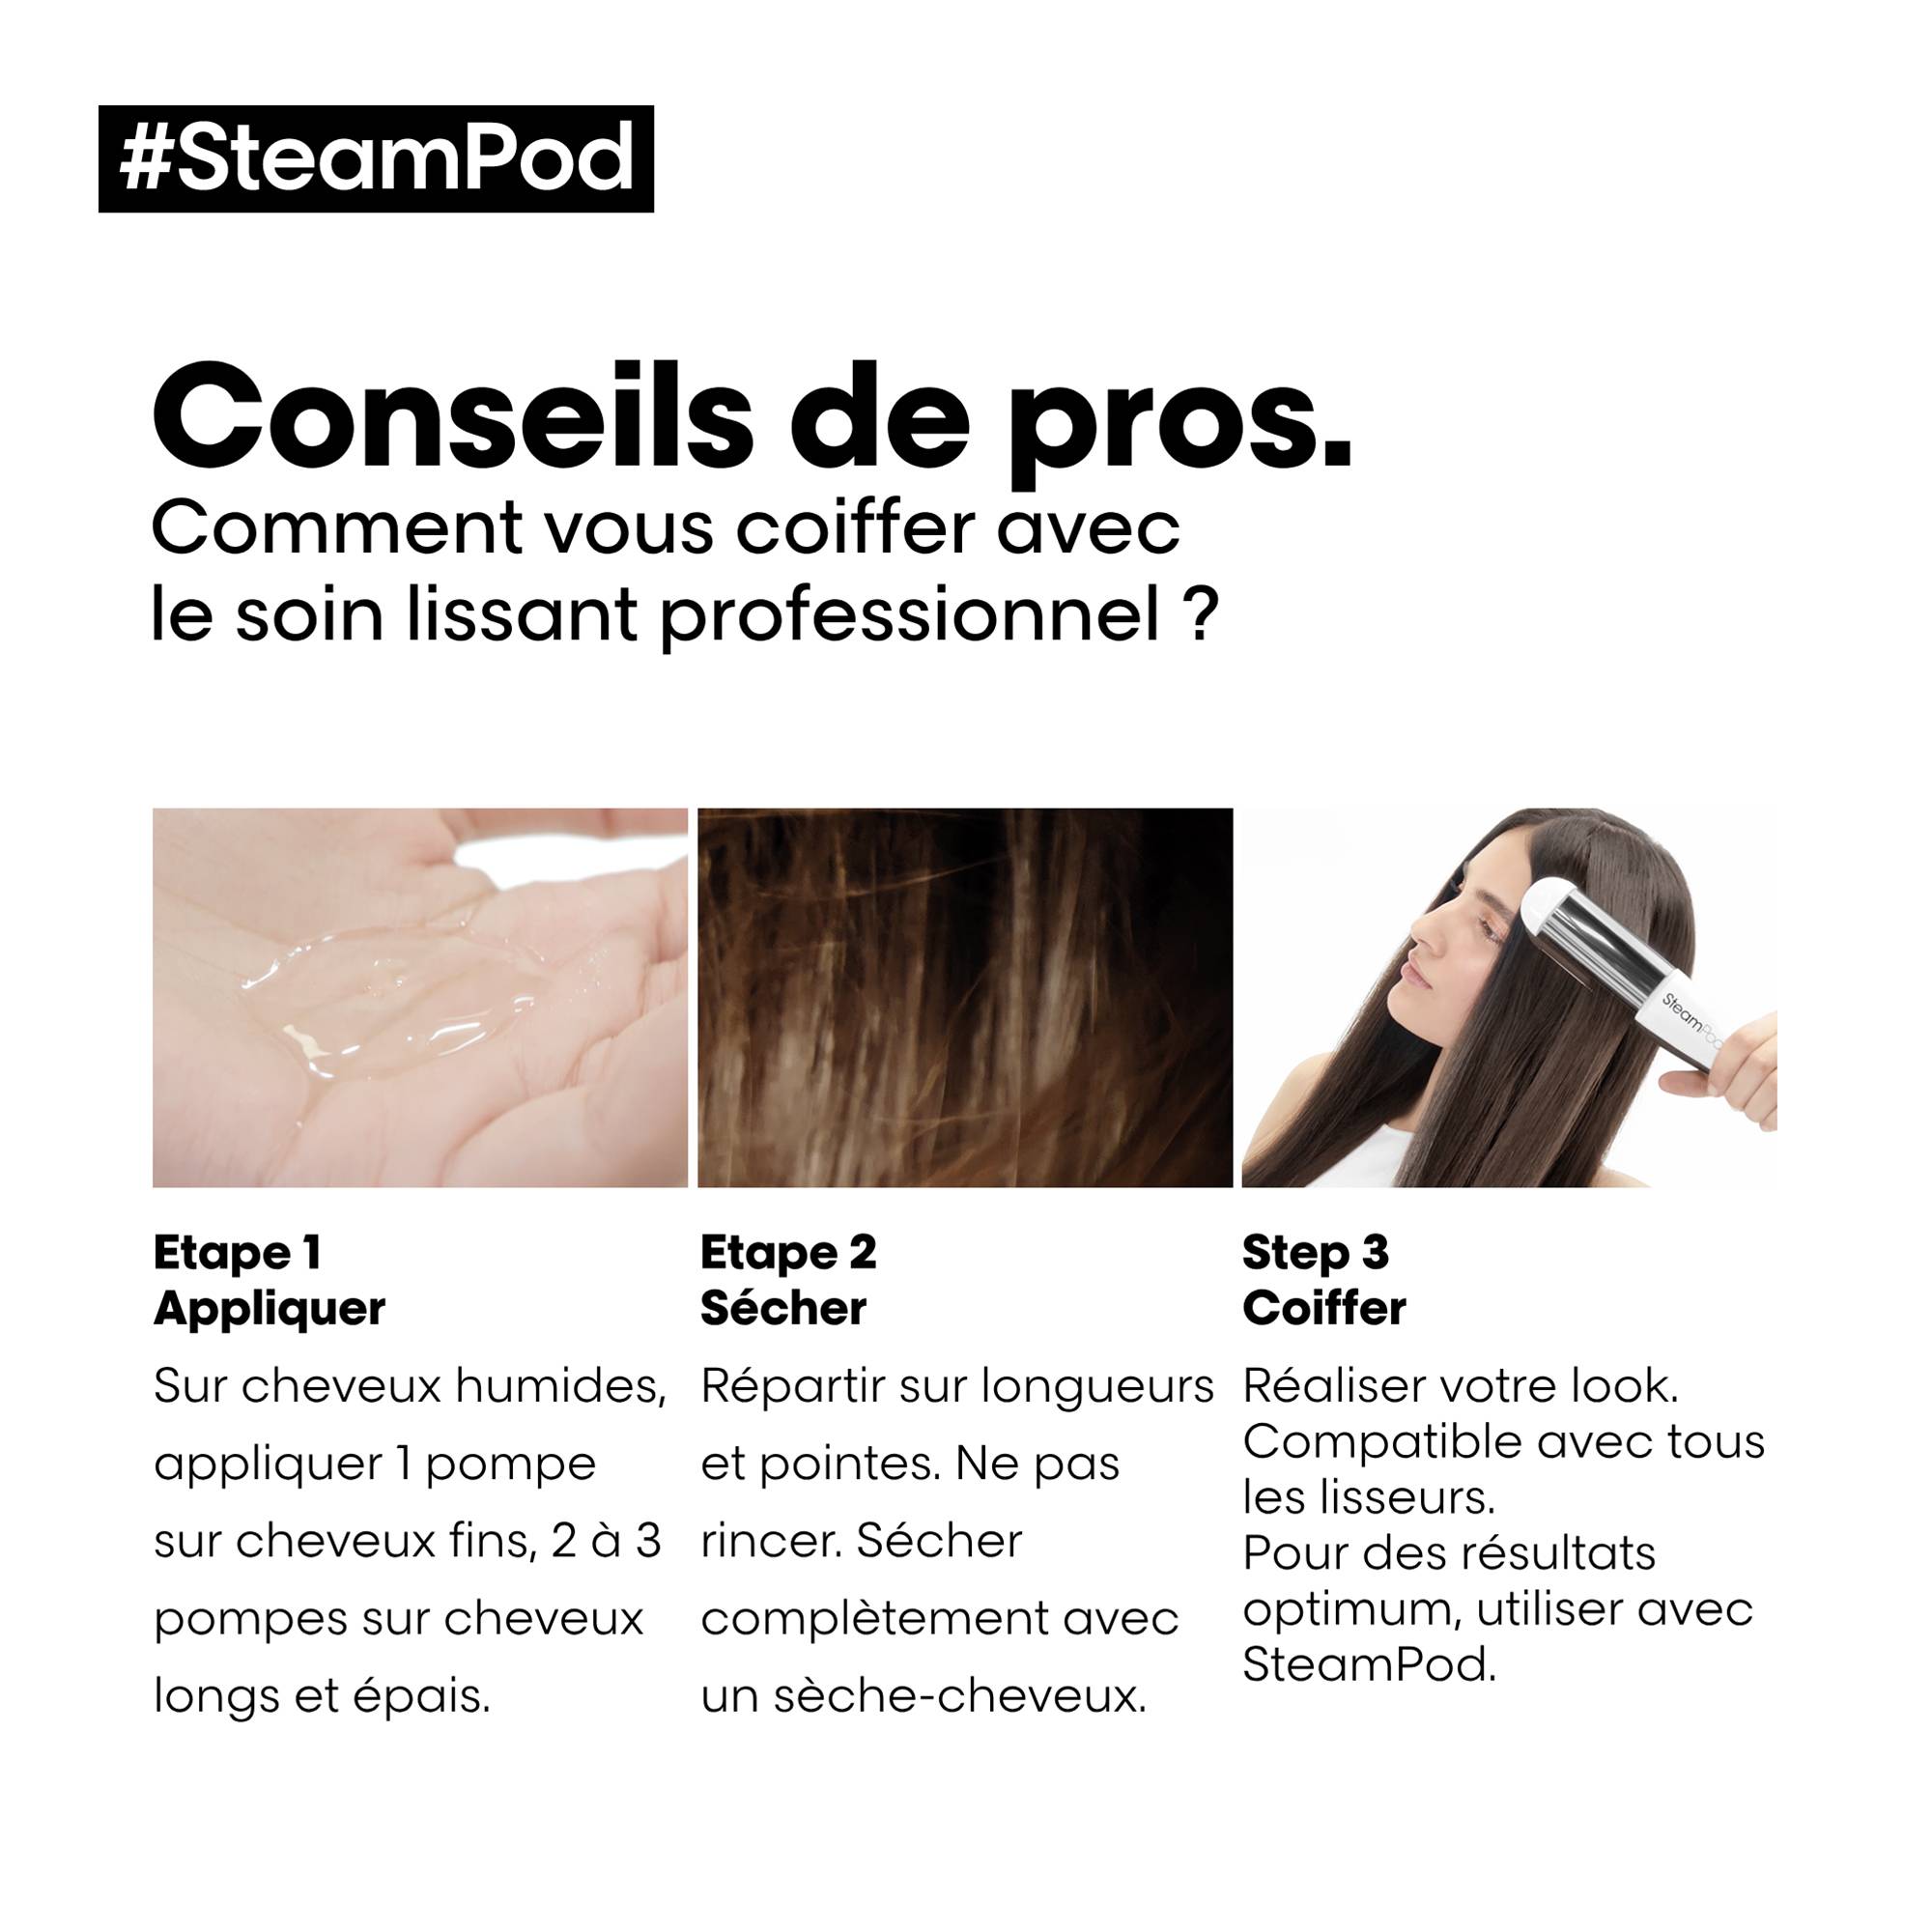 Pack SteamPod 3.0 lisseur vapeur & soin lissant + pochette thermorésistante de la marque L'Oréal Professionnel - 9